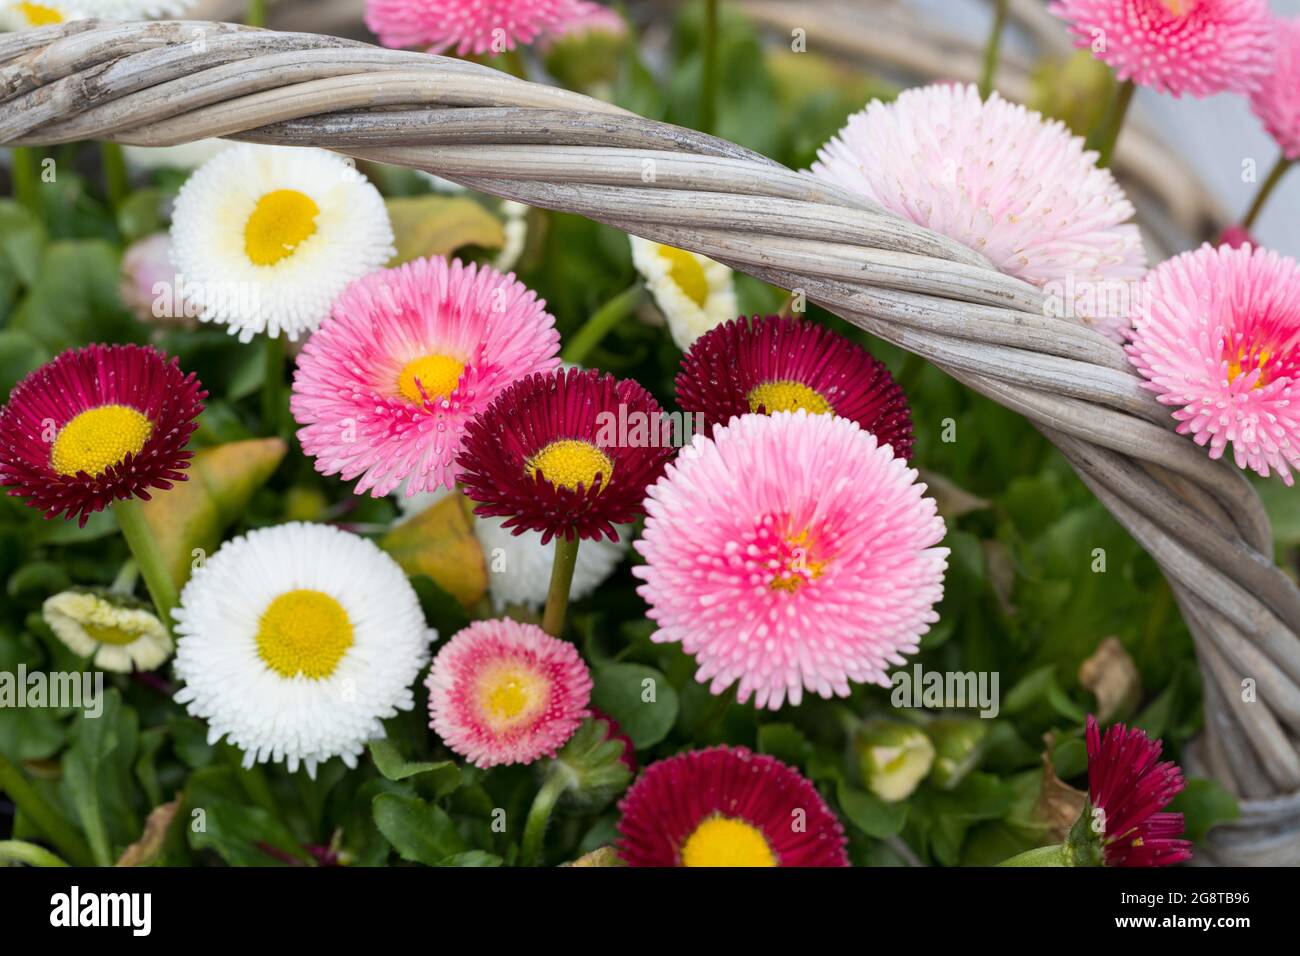 Gänseblümchen, Gänseblümchen, Englische Gänseblümchen (Bellis perennis), bunte Sorten in einem Korb Stockfoto